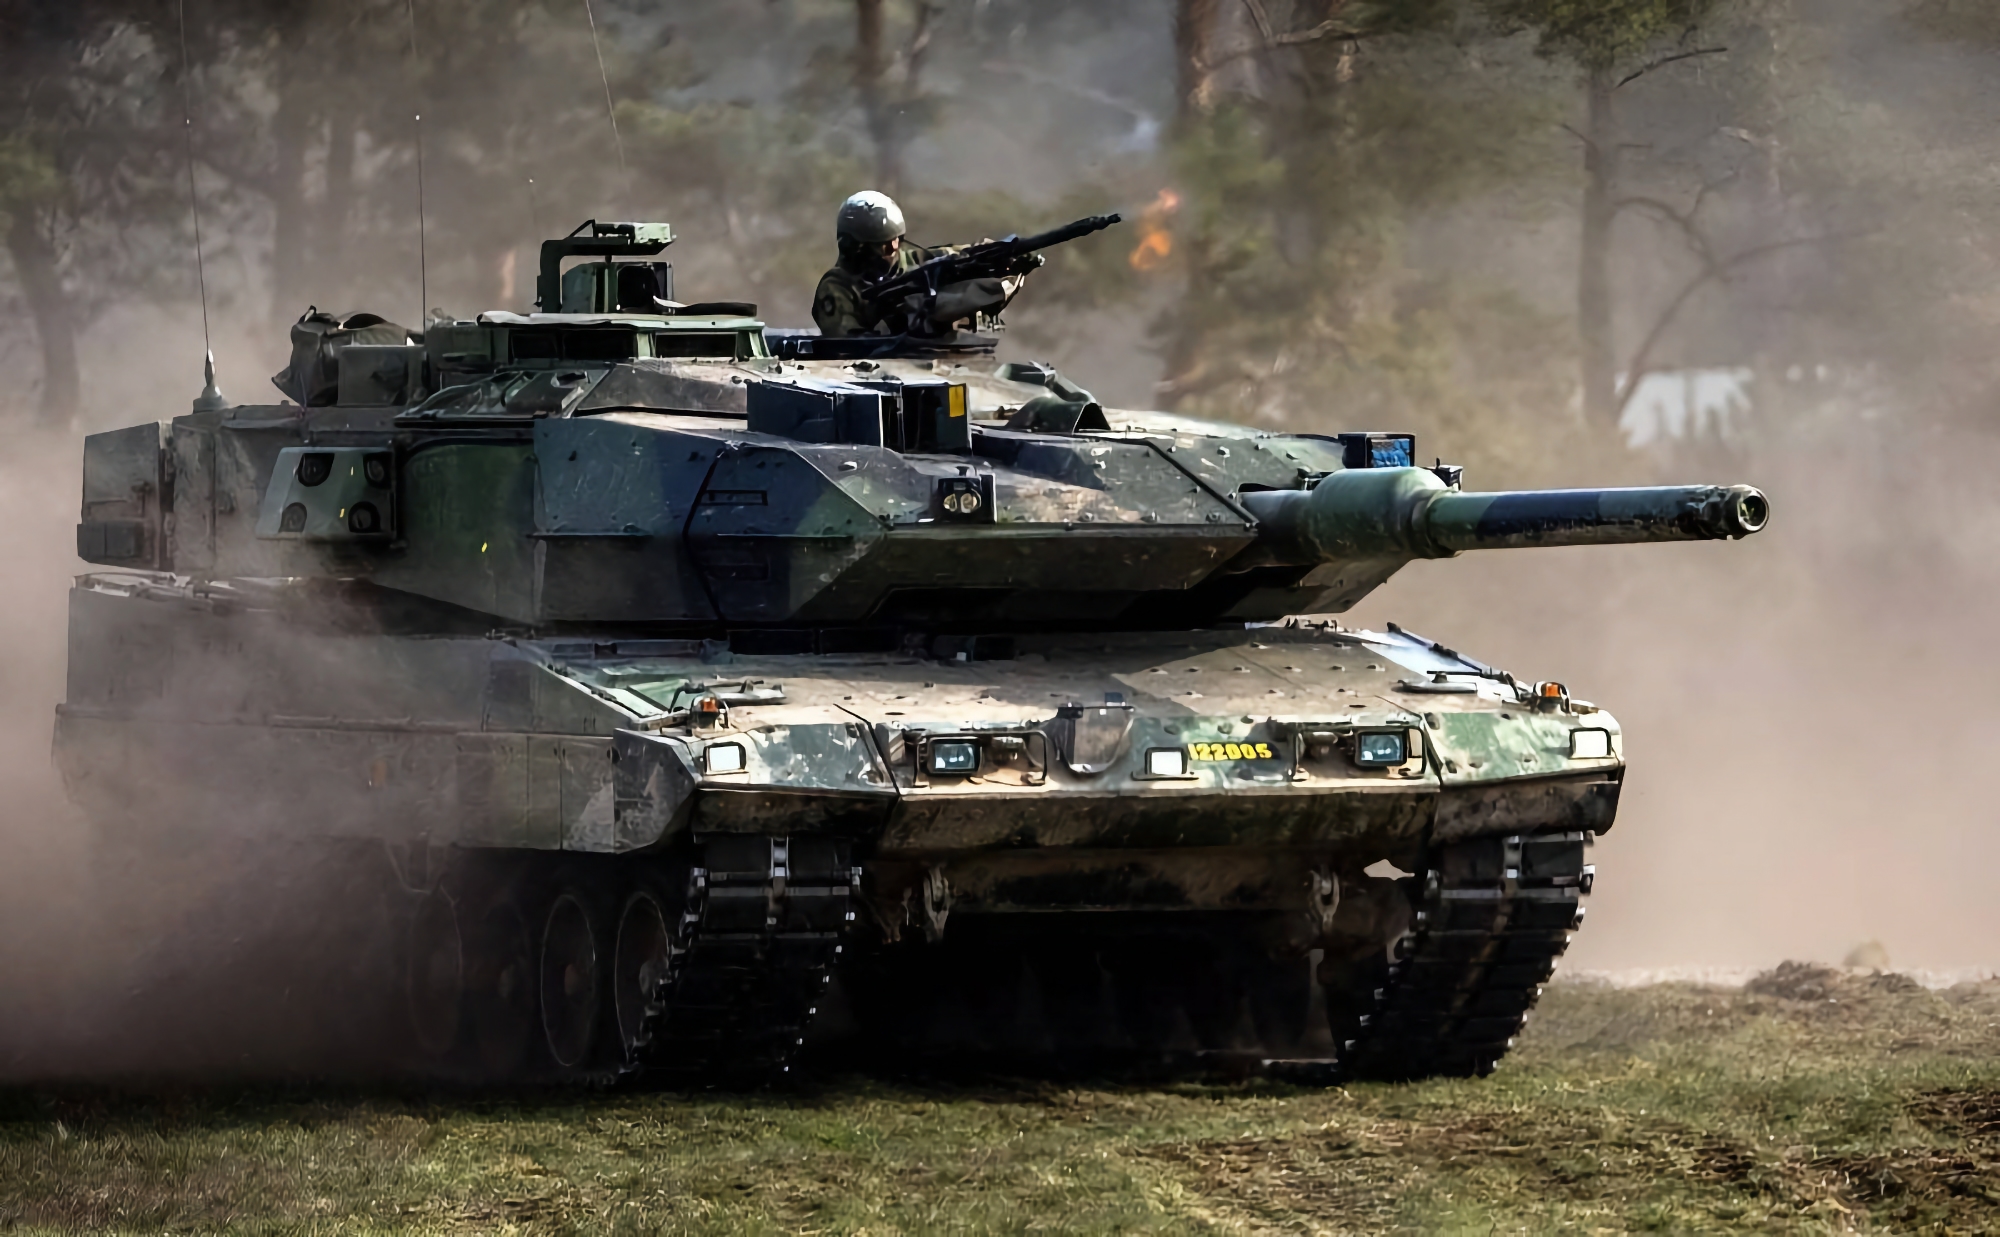 Szwecja przekaże Ukrainie nowy pakiet pomocy wojskowej, w tym amunicję do bojowych wozów piechoty CV90 i czołgów Stridsvagn 122 (aka Leopard 2A5).